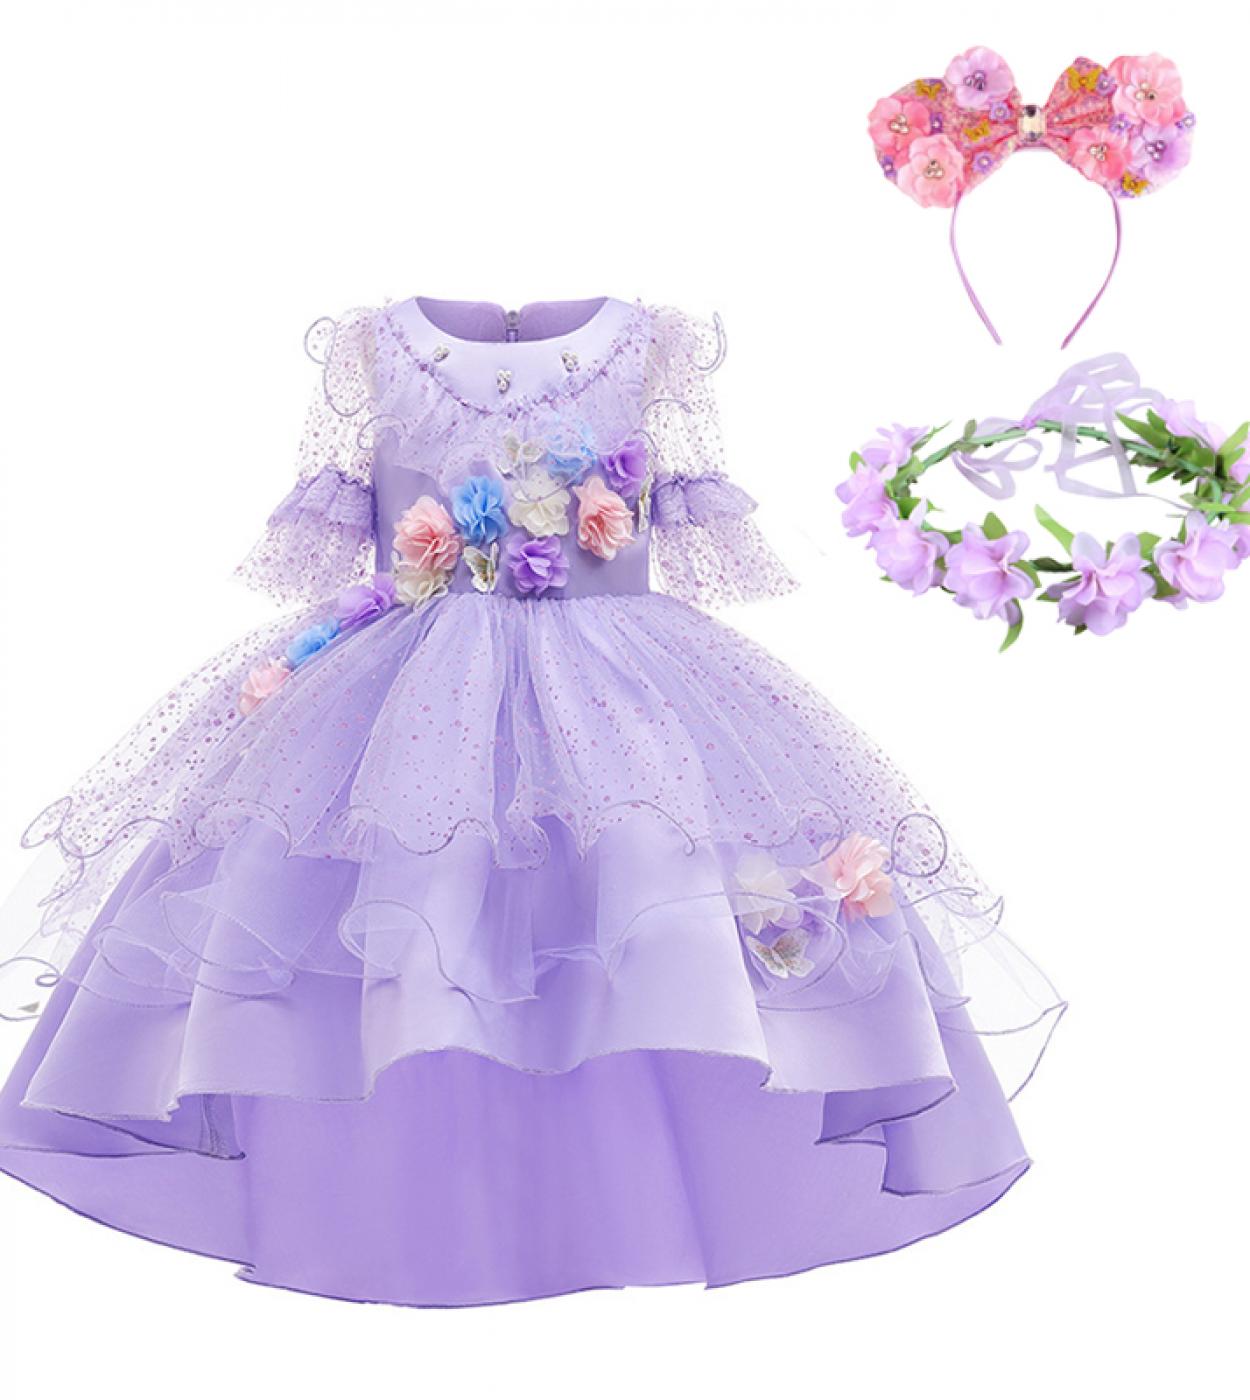 Nuevo vestido Encanto para niña disfraz de Cosplay Isabella Mirabel Girl Up encaje fiesta princesa túnica niños Floral Frock Clo